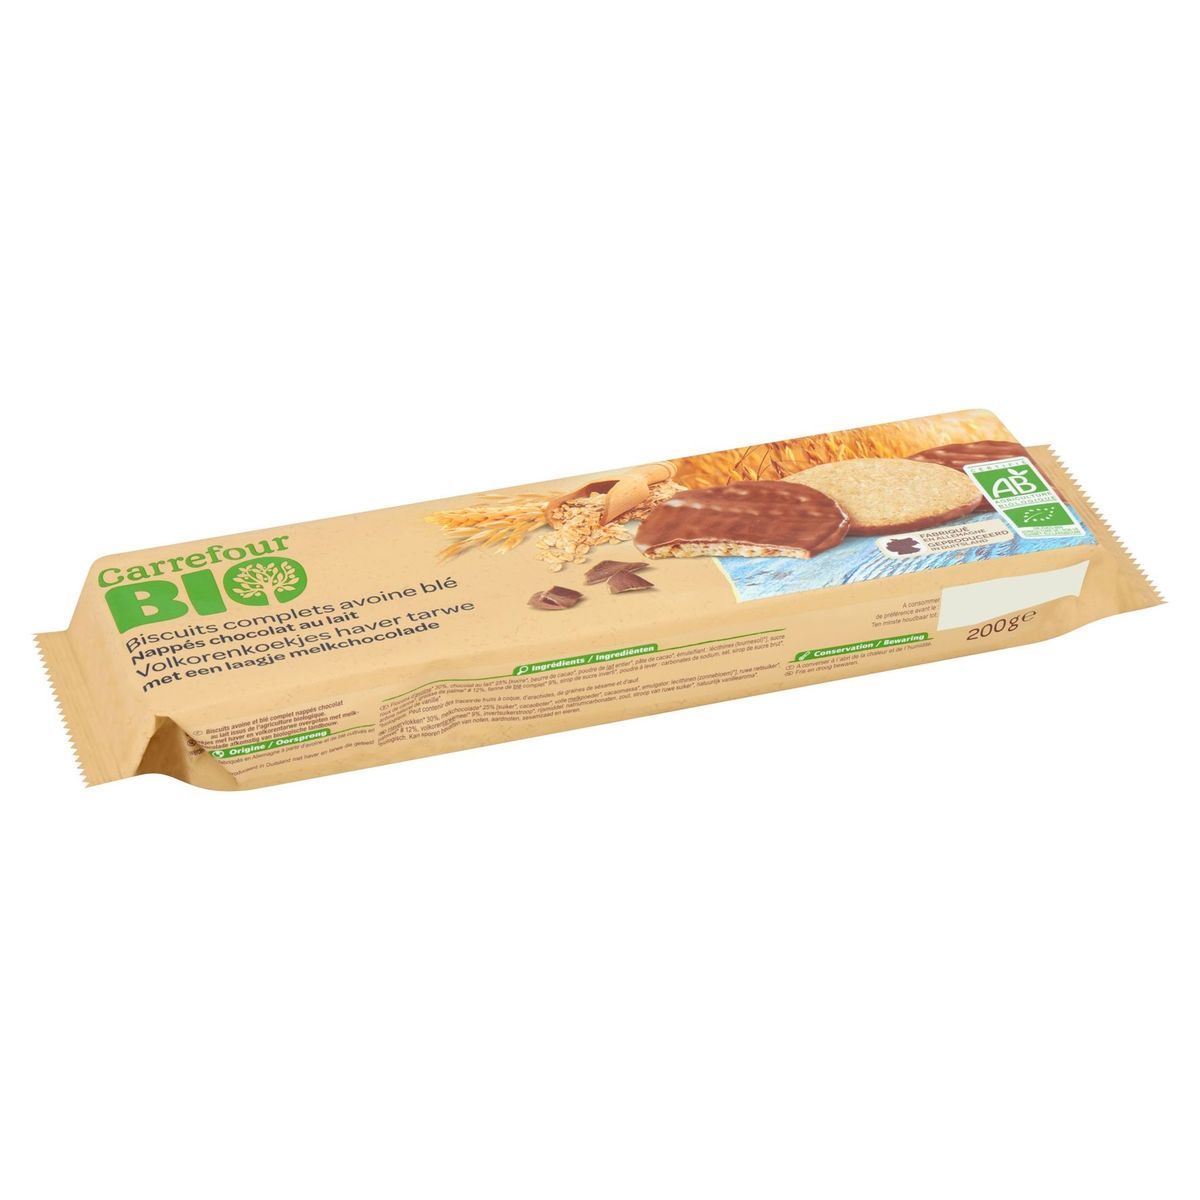 Carrefour Bio Biscuits Complets Avoine Blé Chocolat au Lait 200 g